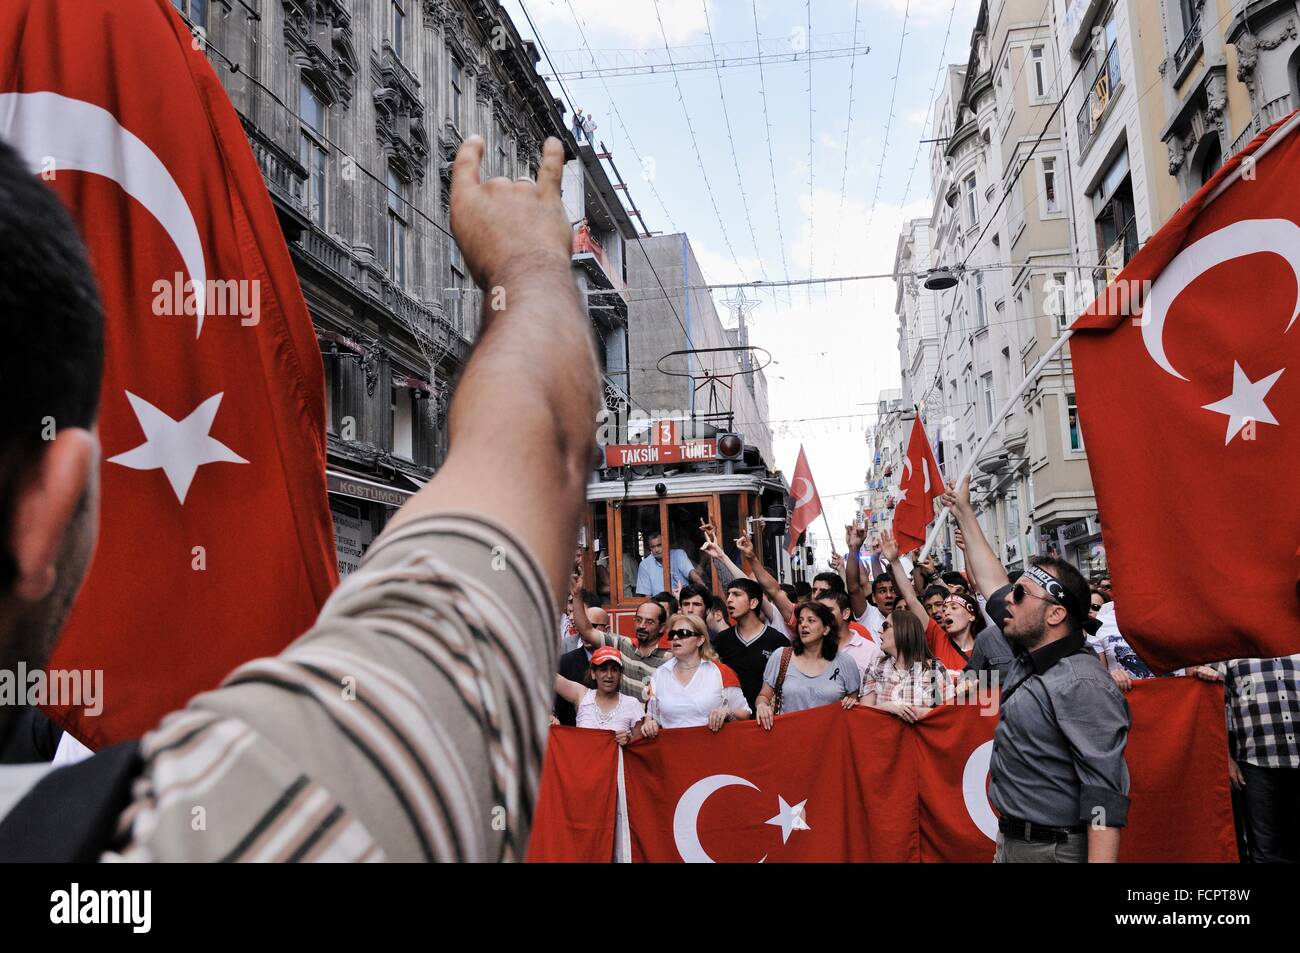 La protestation politique dans la rue Istiklal, Istanbul, Turquie Banque D'Images